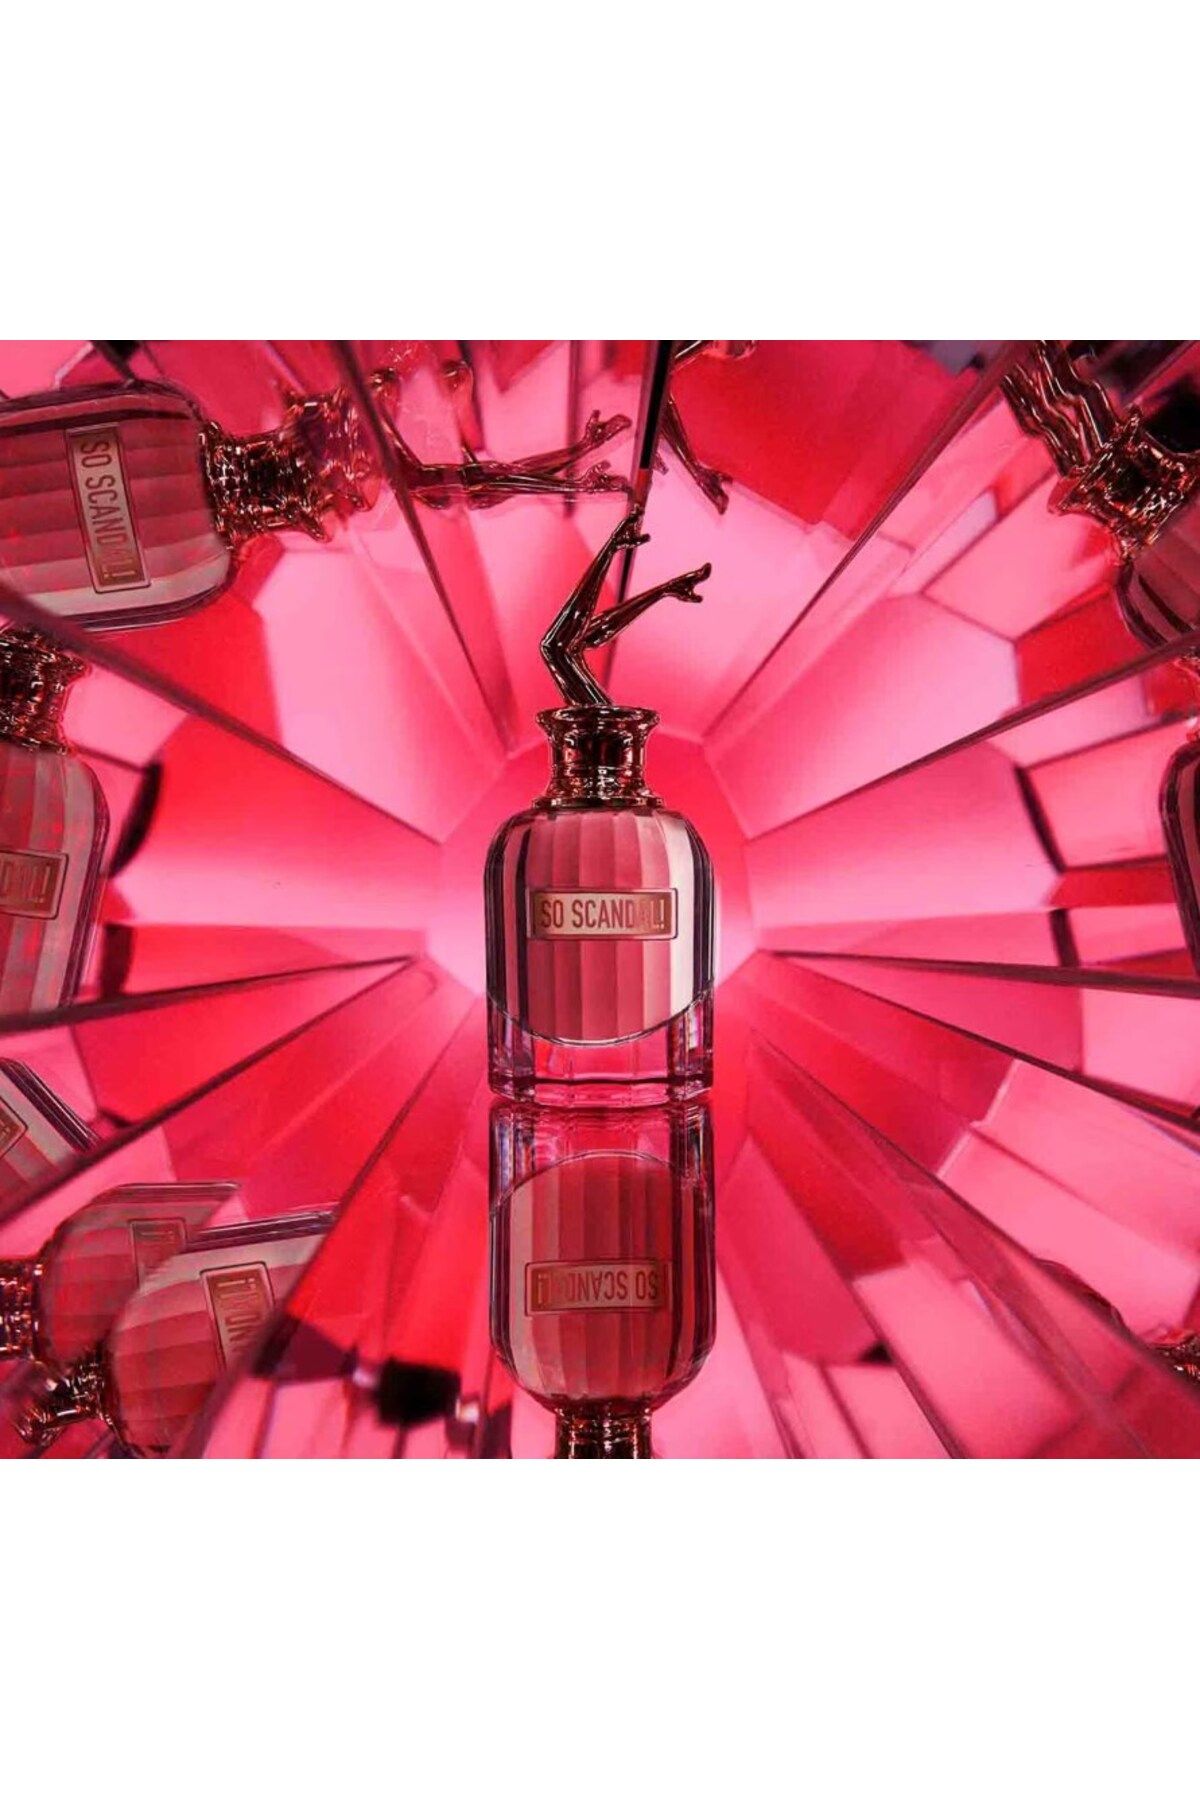 Jean Paul Gaultier So Scandal - Eau De Parfum 80 ml